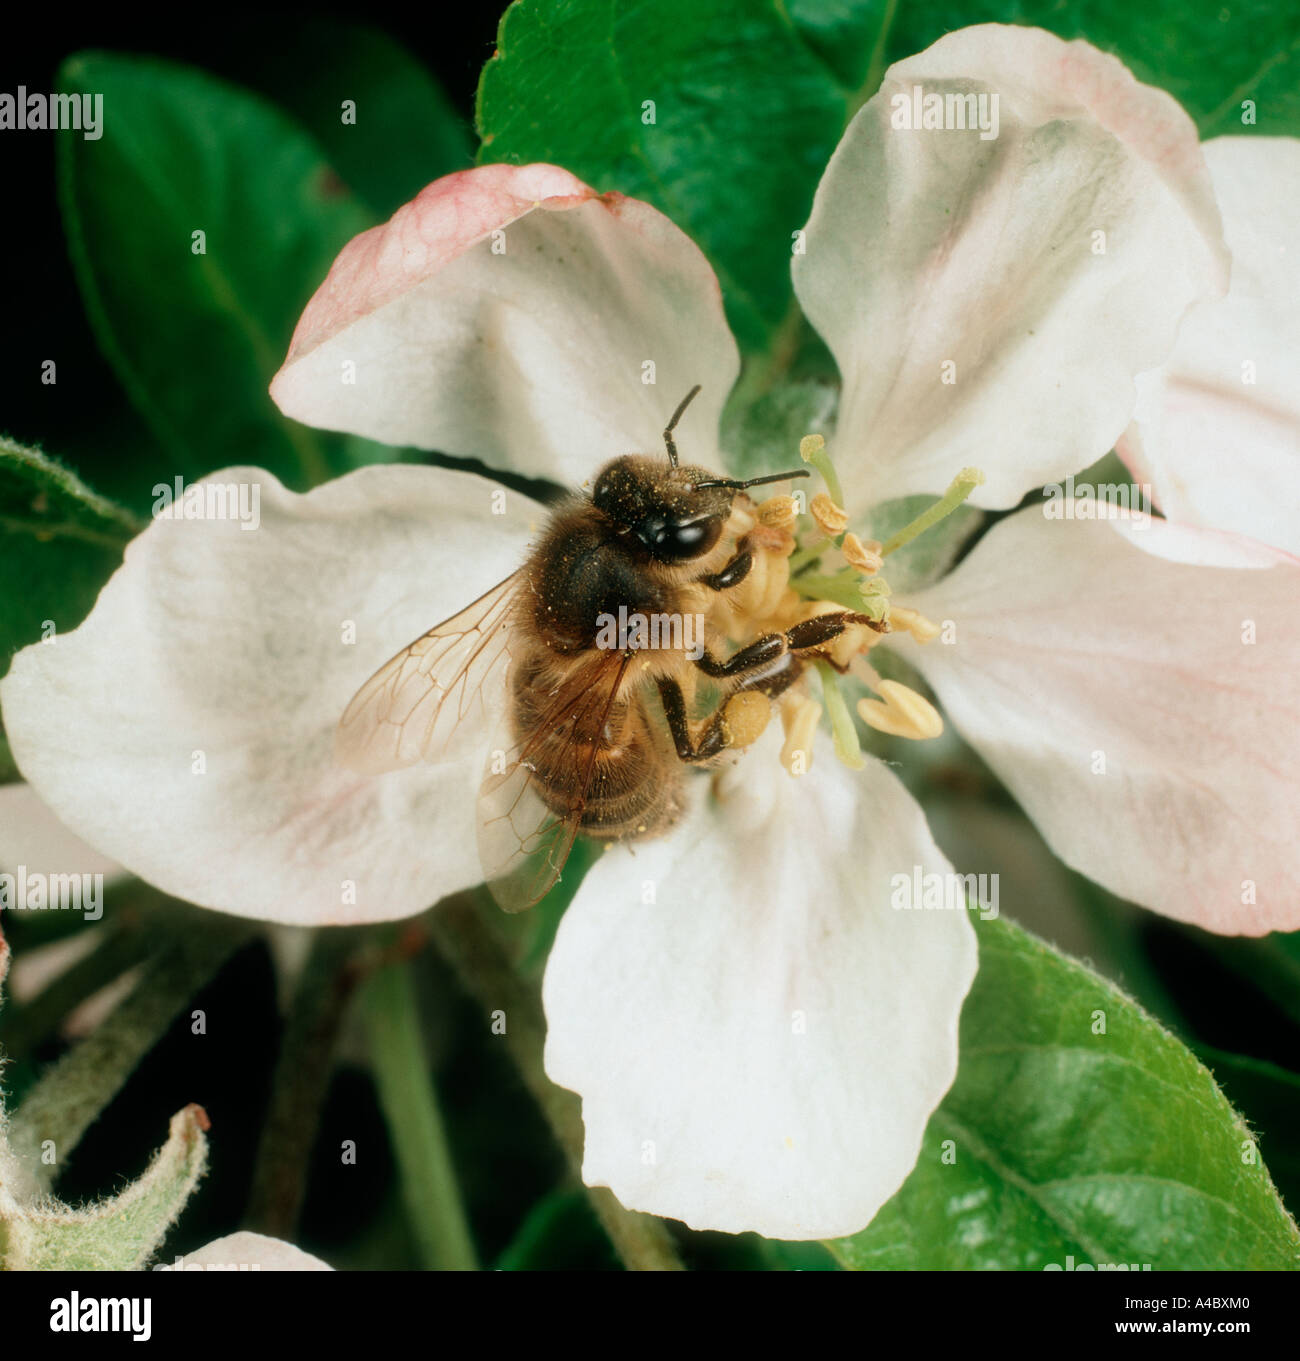 Miel de abejas Apis mellifera trabajador en una manzana flor Foto de stock